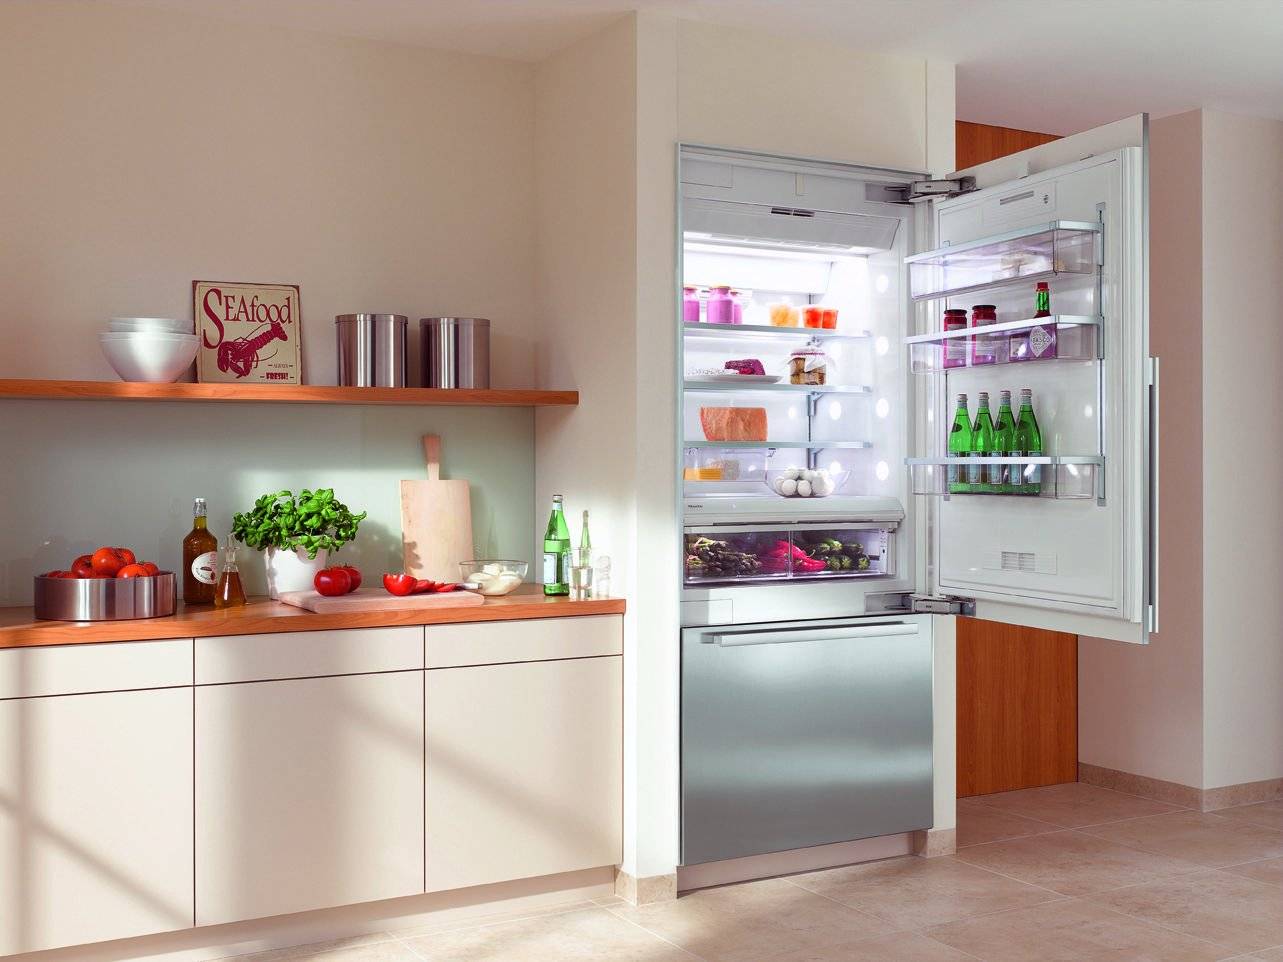 Холодильник в прихожей: плюсы и минусы, варианты расположения, примеры. можно ли перенести холодильник из кухни в прихожую отдельная морозильная камера от холодильника